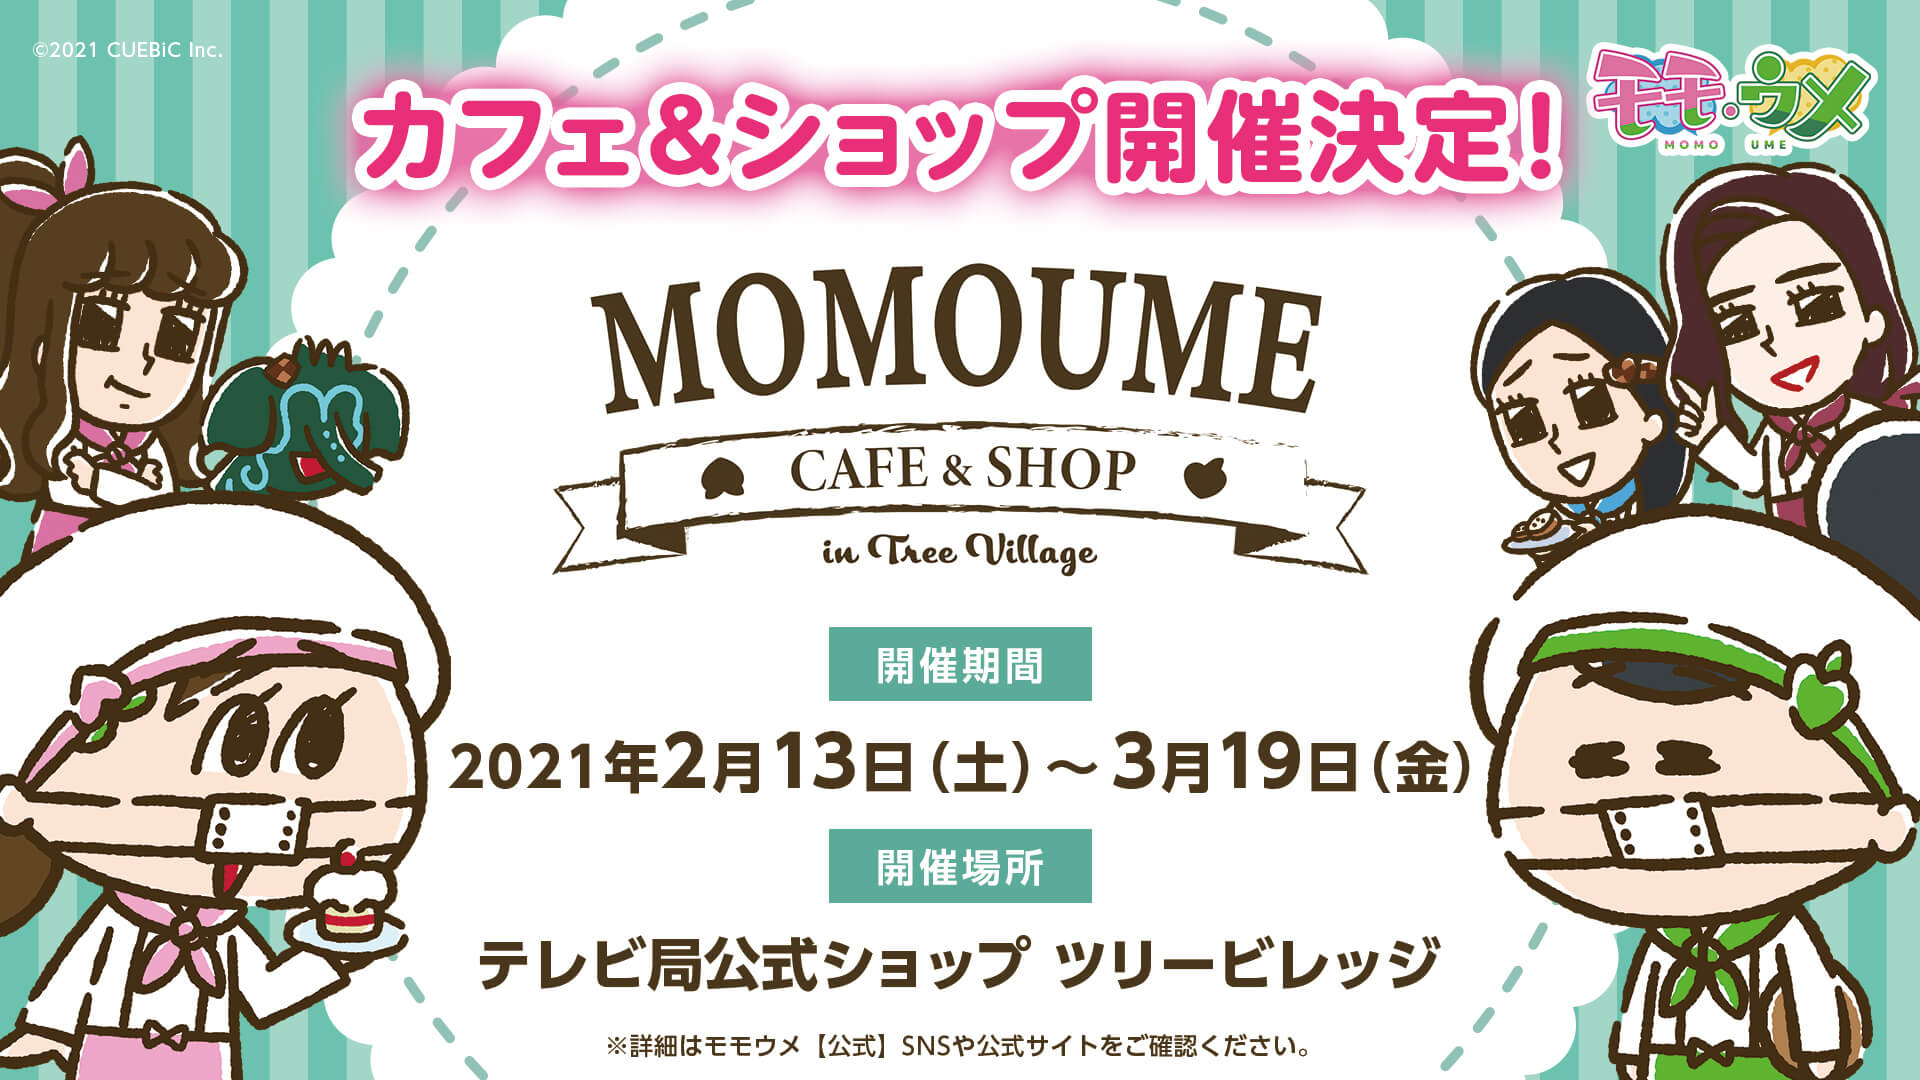 Snsアニメ モモウメ のカフェ ショップが東京スカイツリータウン テレビ局公式ショップ ツリービレッジ にオープン 株式会社キュービック